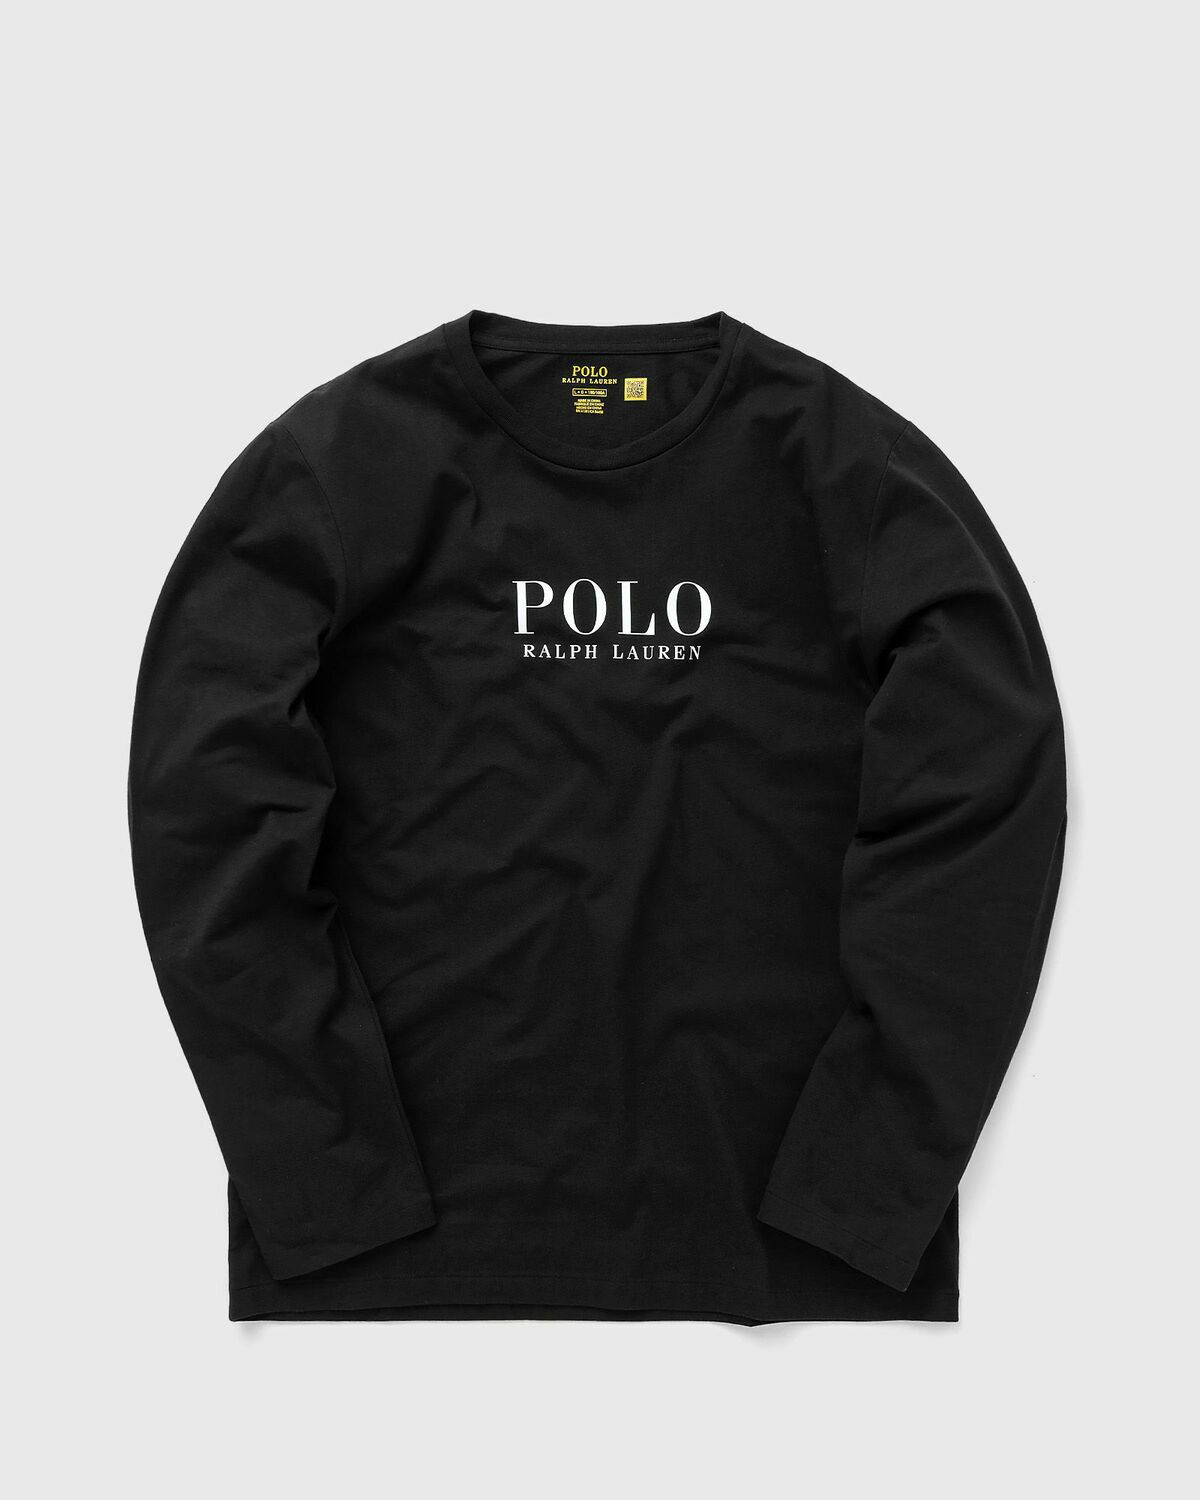 Polo Ralph Lauren L/S Crew Sleep Top Black - Mens - Sleep & Loungewear Polo  Ralph Lauren